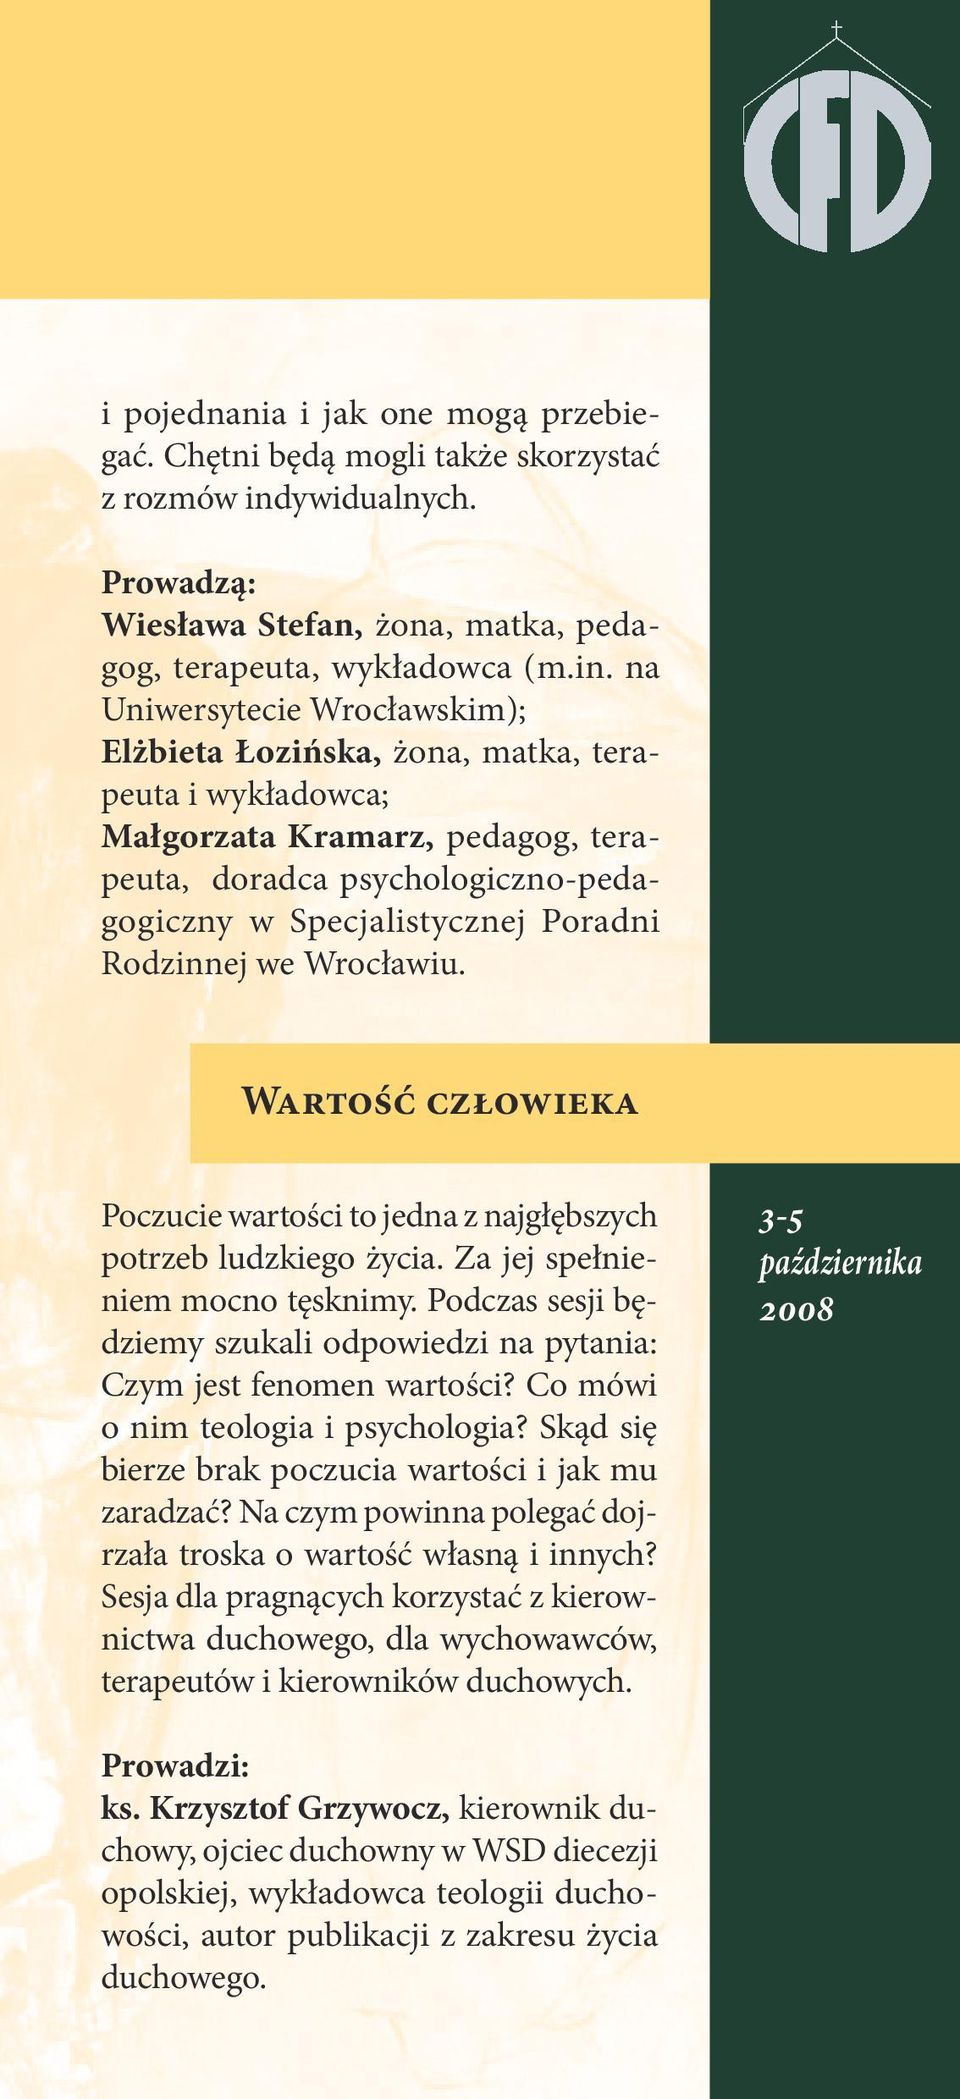 na Uniwersytecie Wrocławskim); Elżbieta Łozińska, żona, matka, terapeuta i wykładowca; Małgorzata Kramarz, pedagog, terapeuta, doradca psychologiczno-pedagogiczny w Specjalistycznej Poradni Rodzinnej